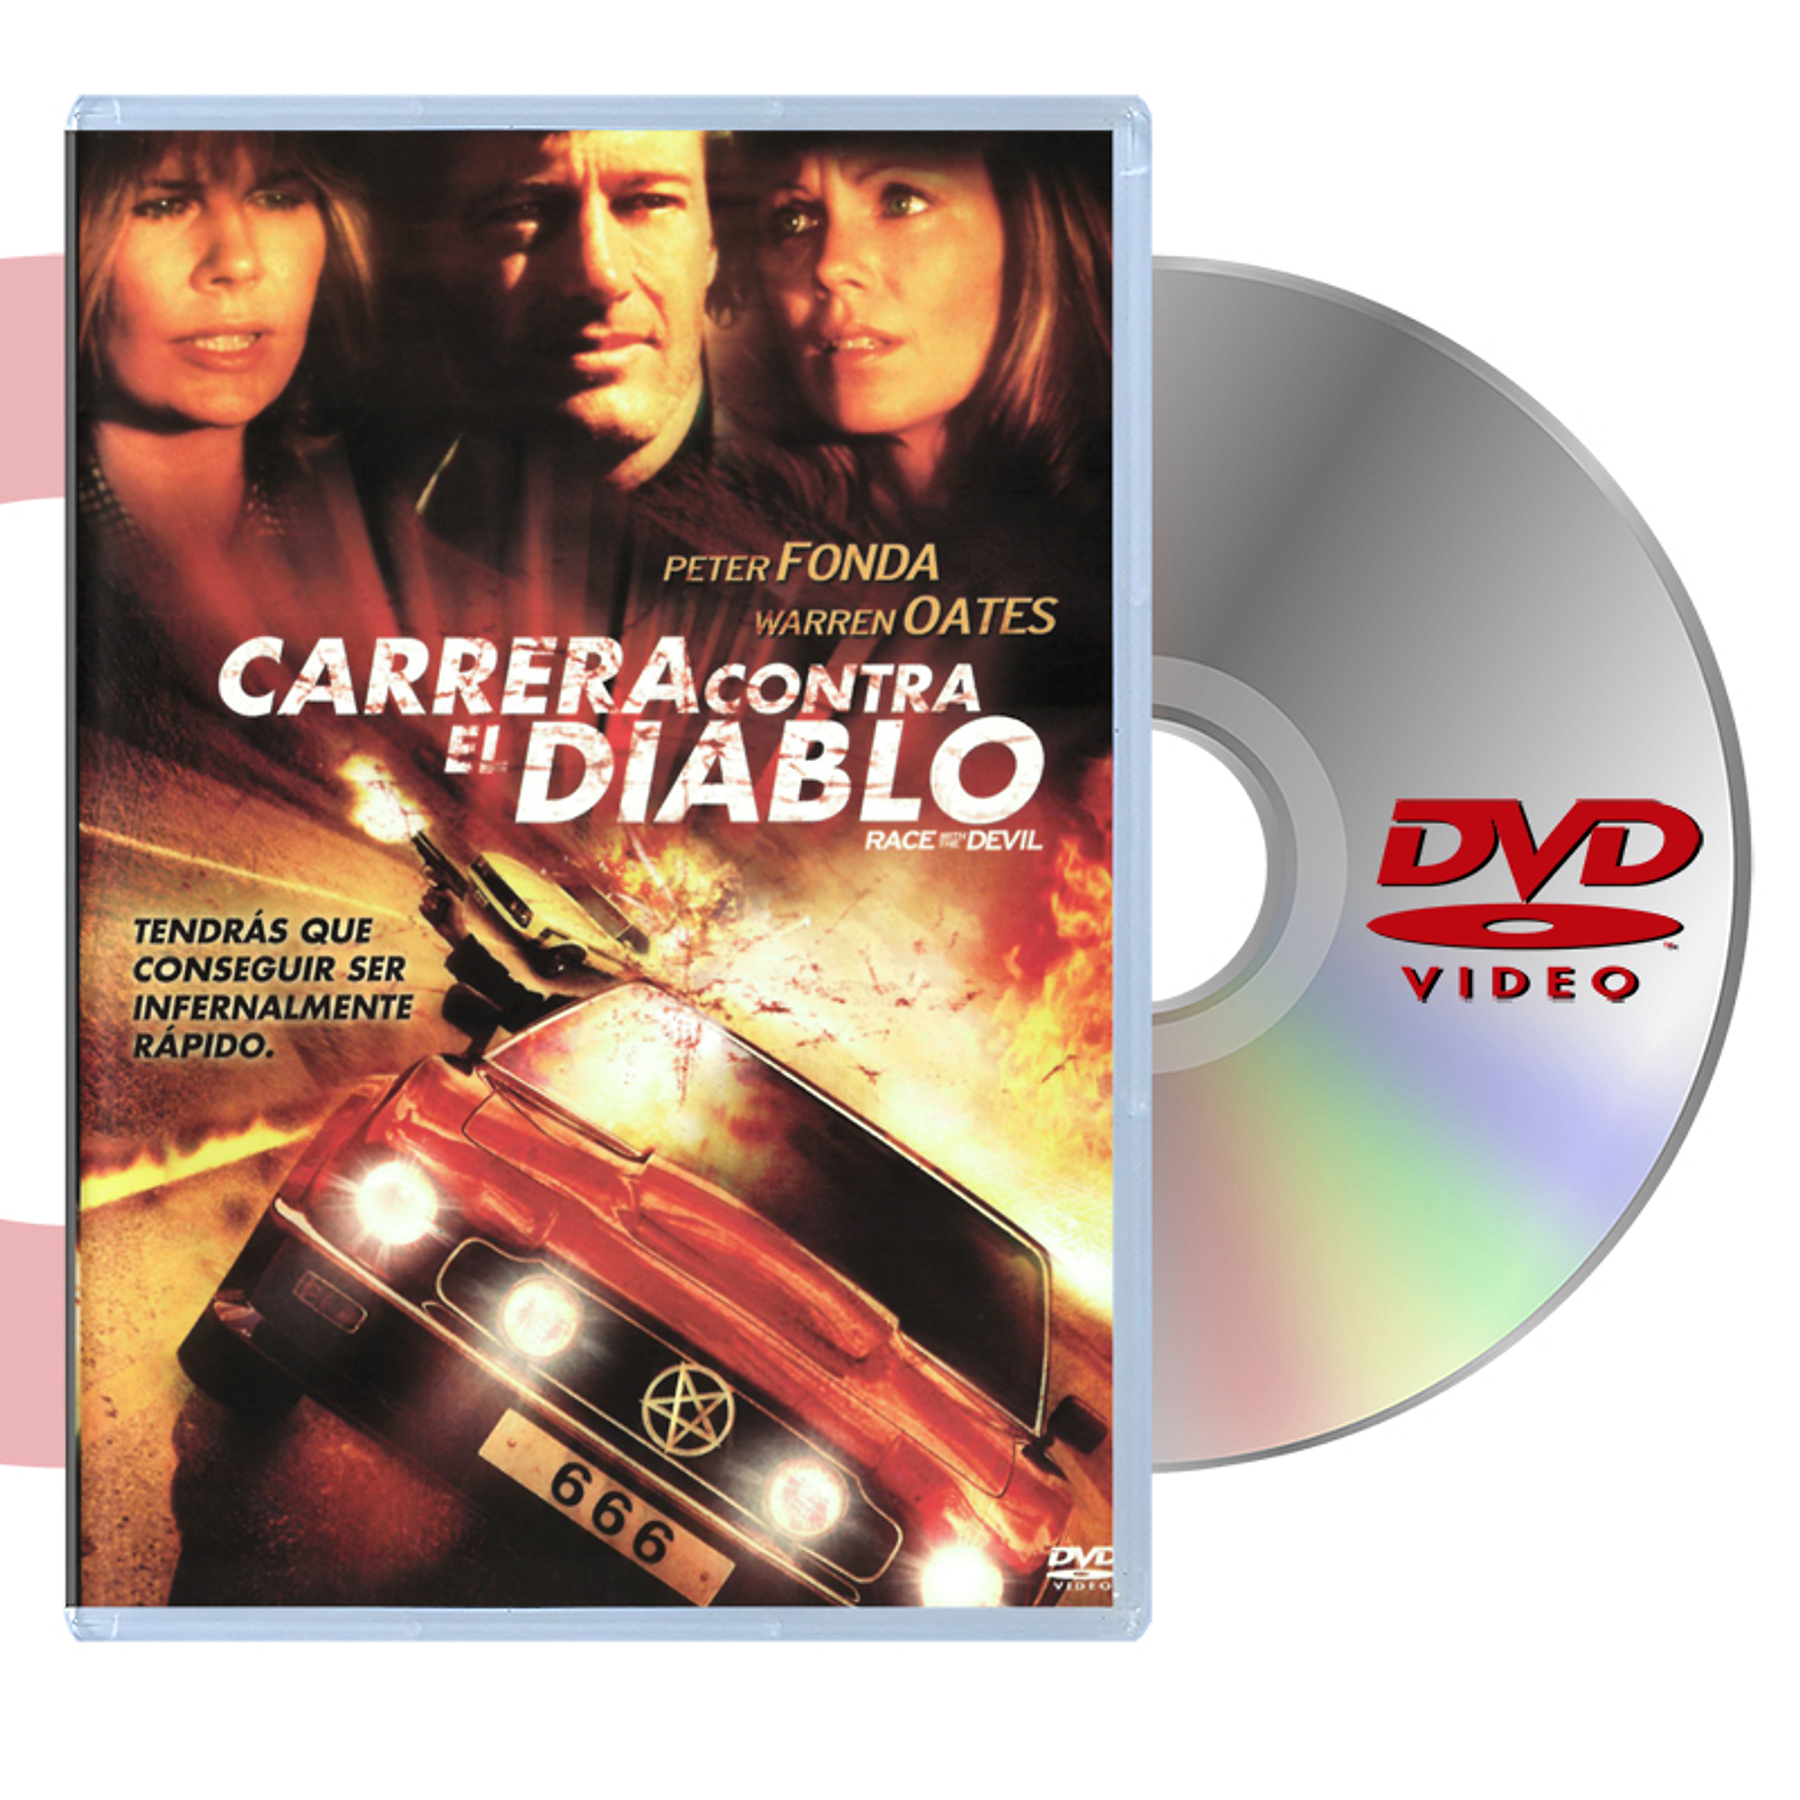 DVD CARRERA CONTRA EL DIABLO